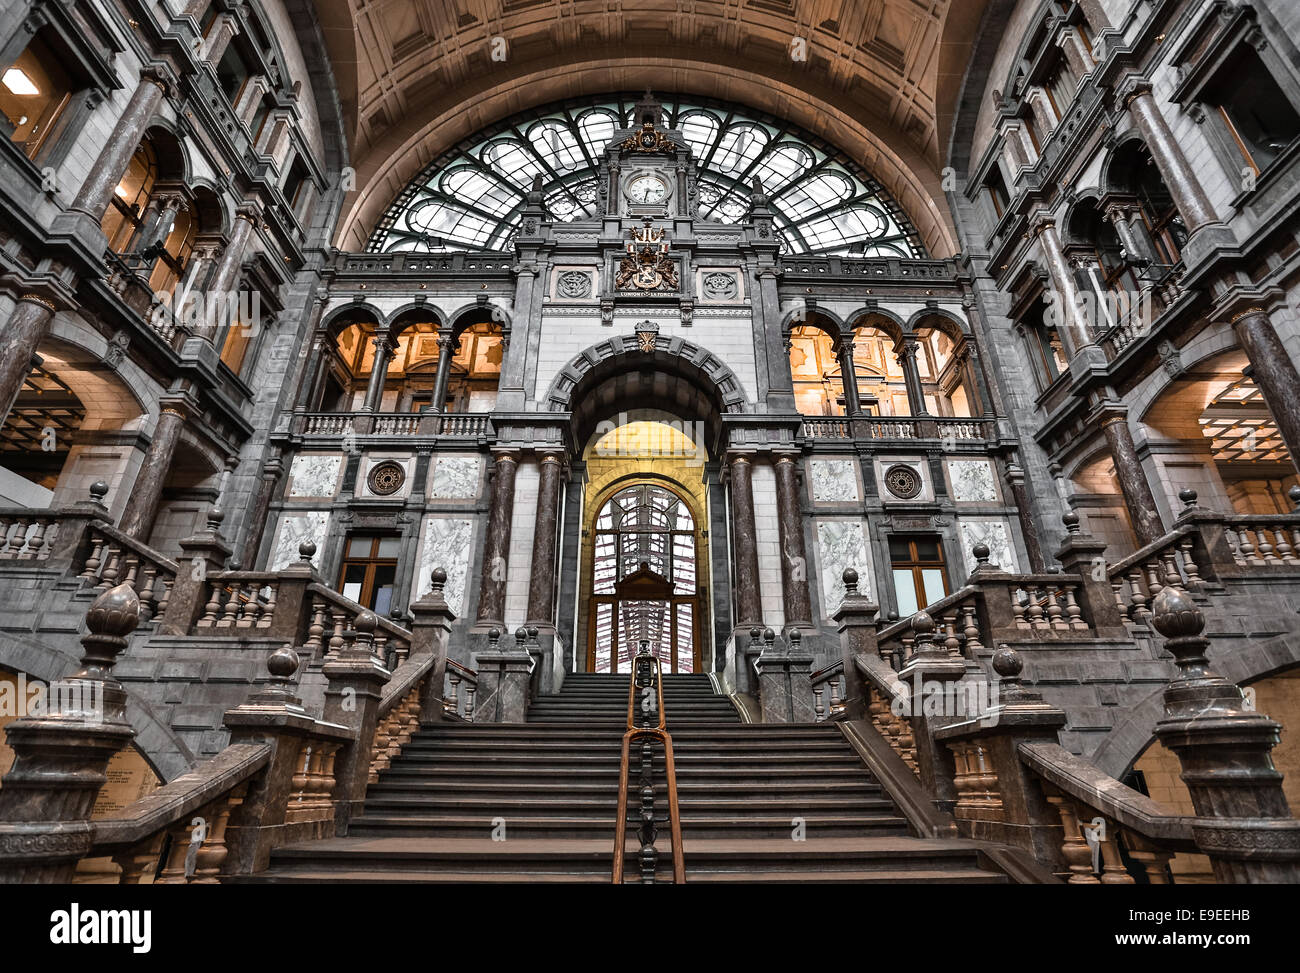 Antwerpen-Centraal station, Antwerp, Belgium Stock Photo